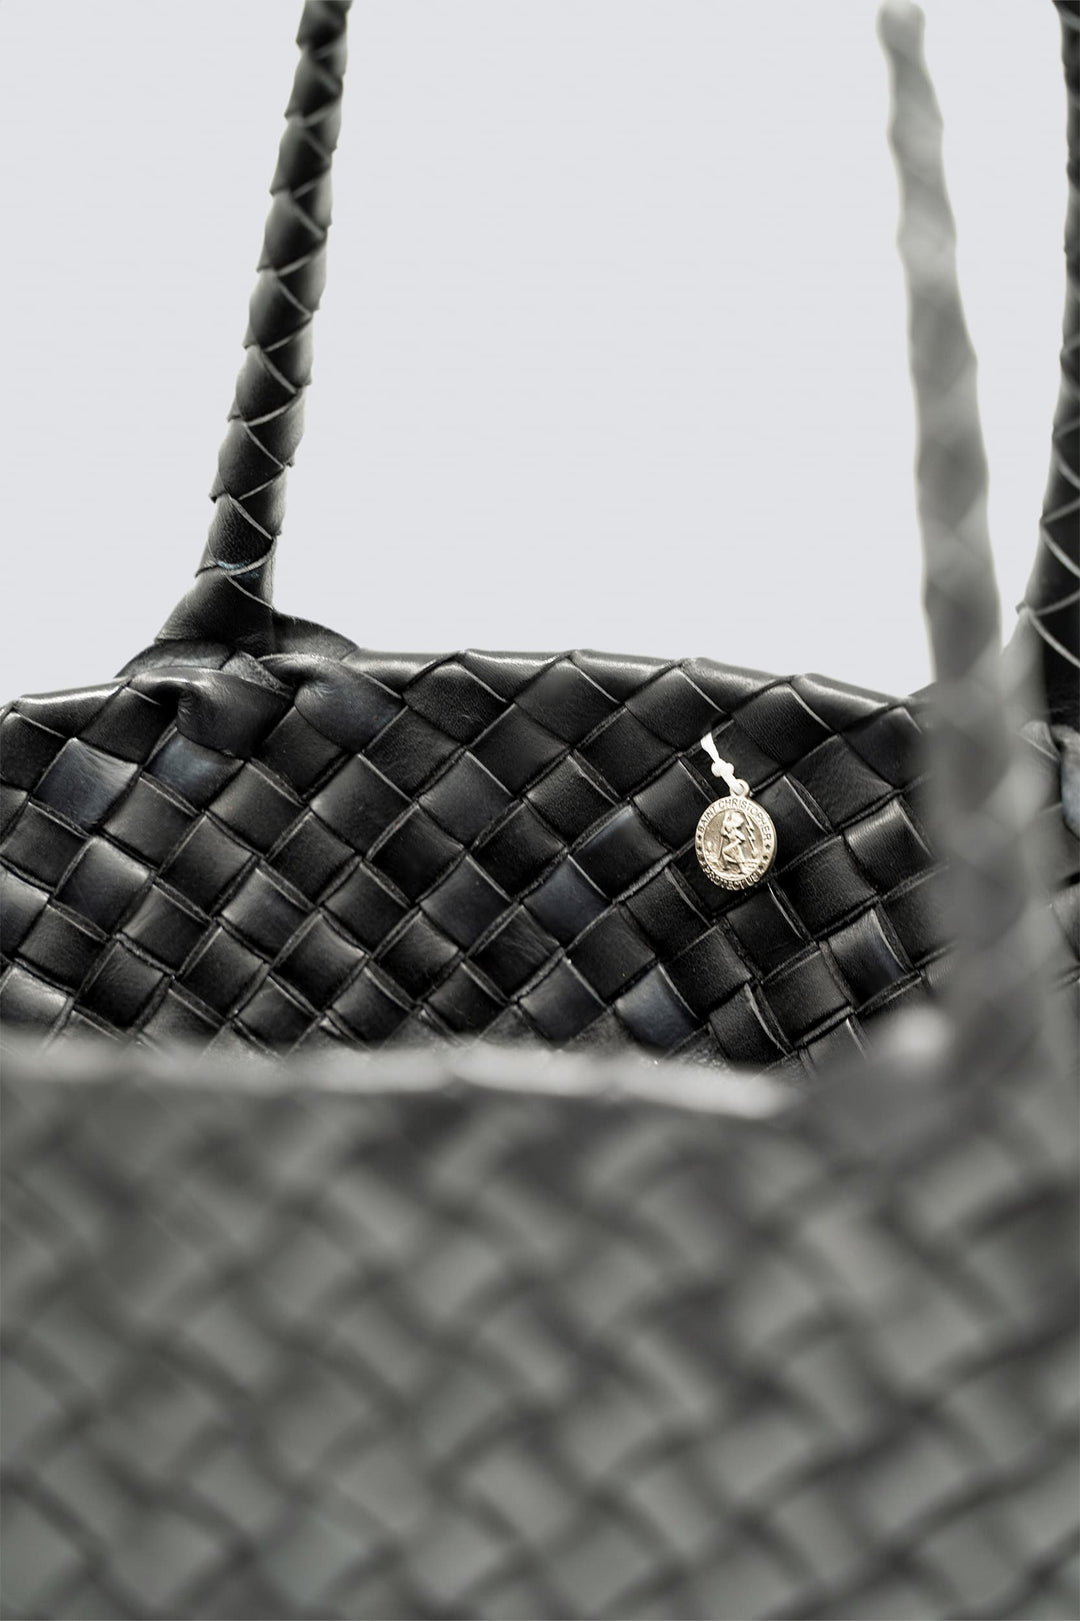 Handmade women's handbag in gray white woven leather